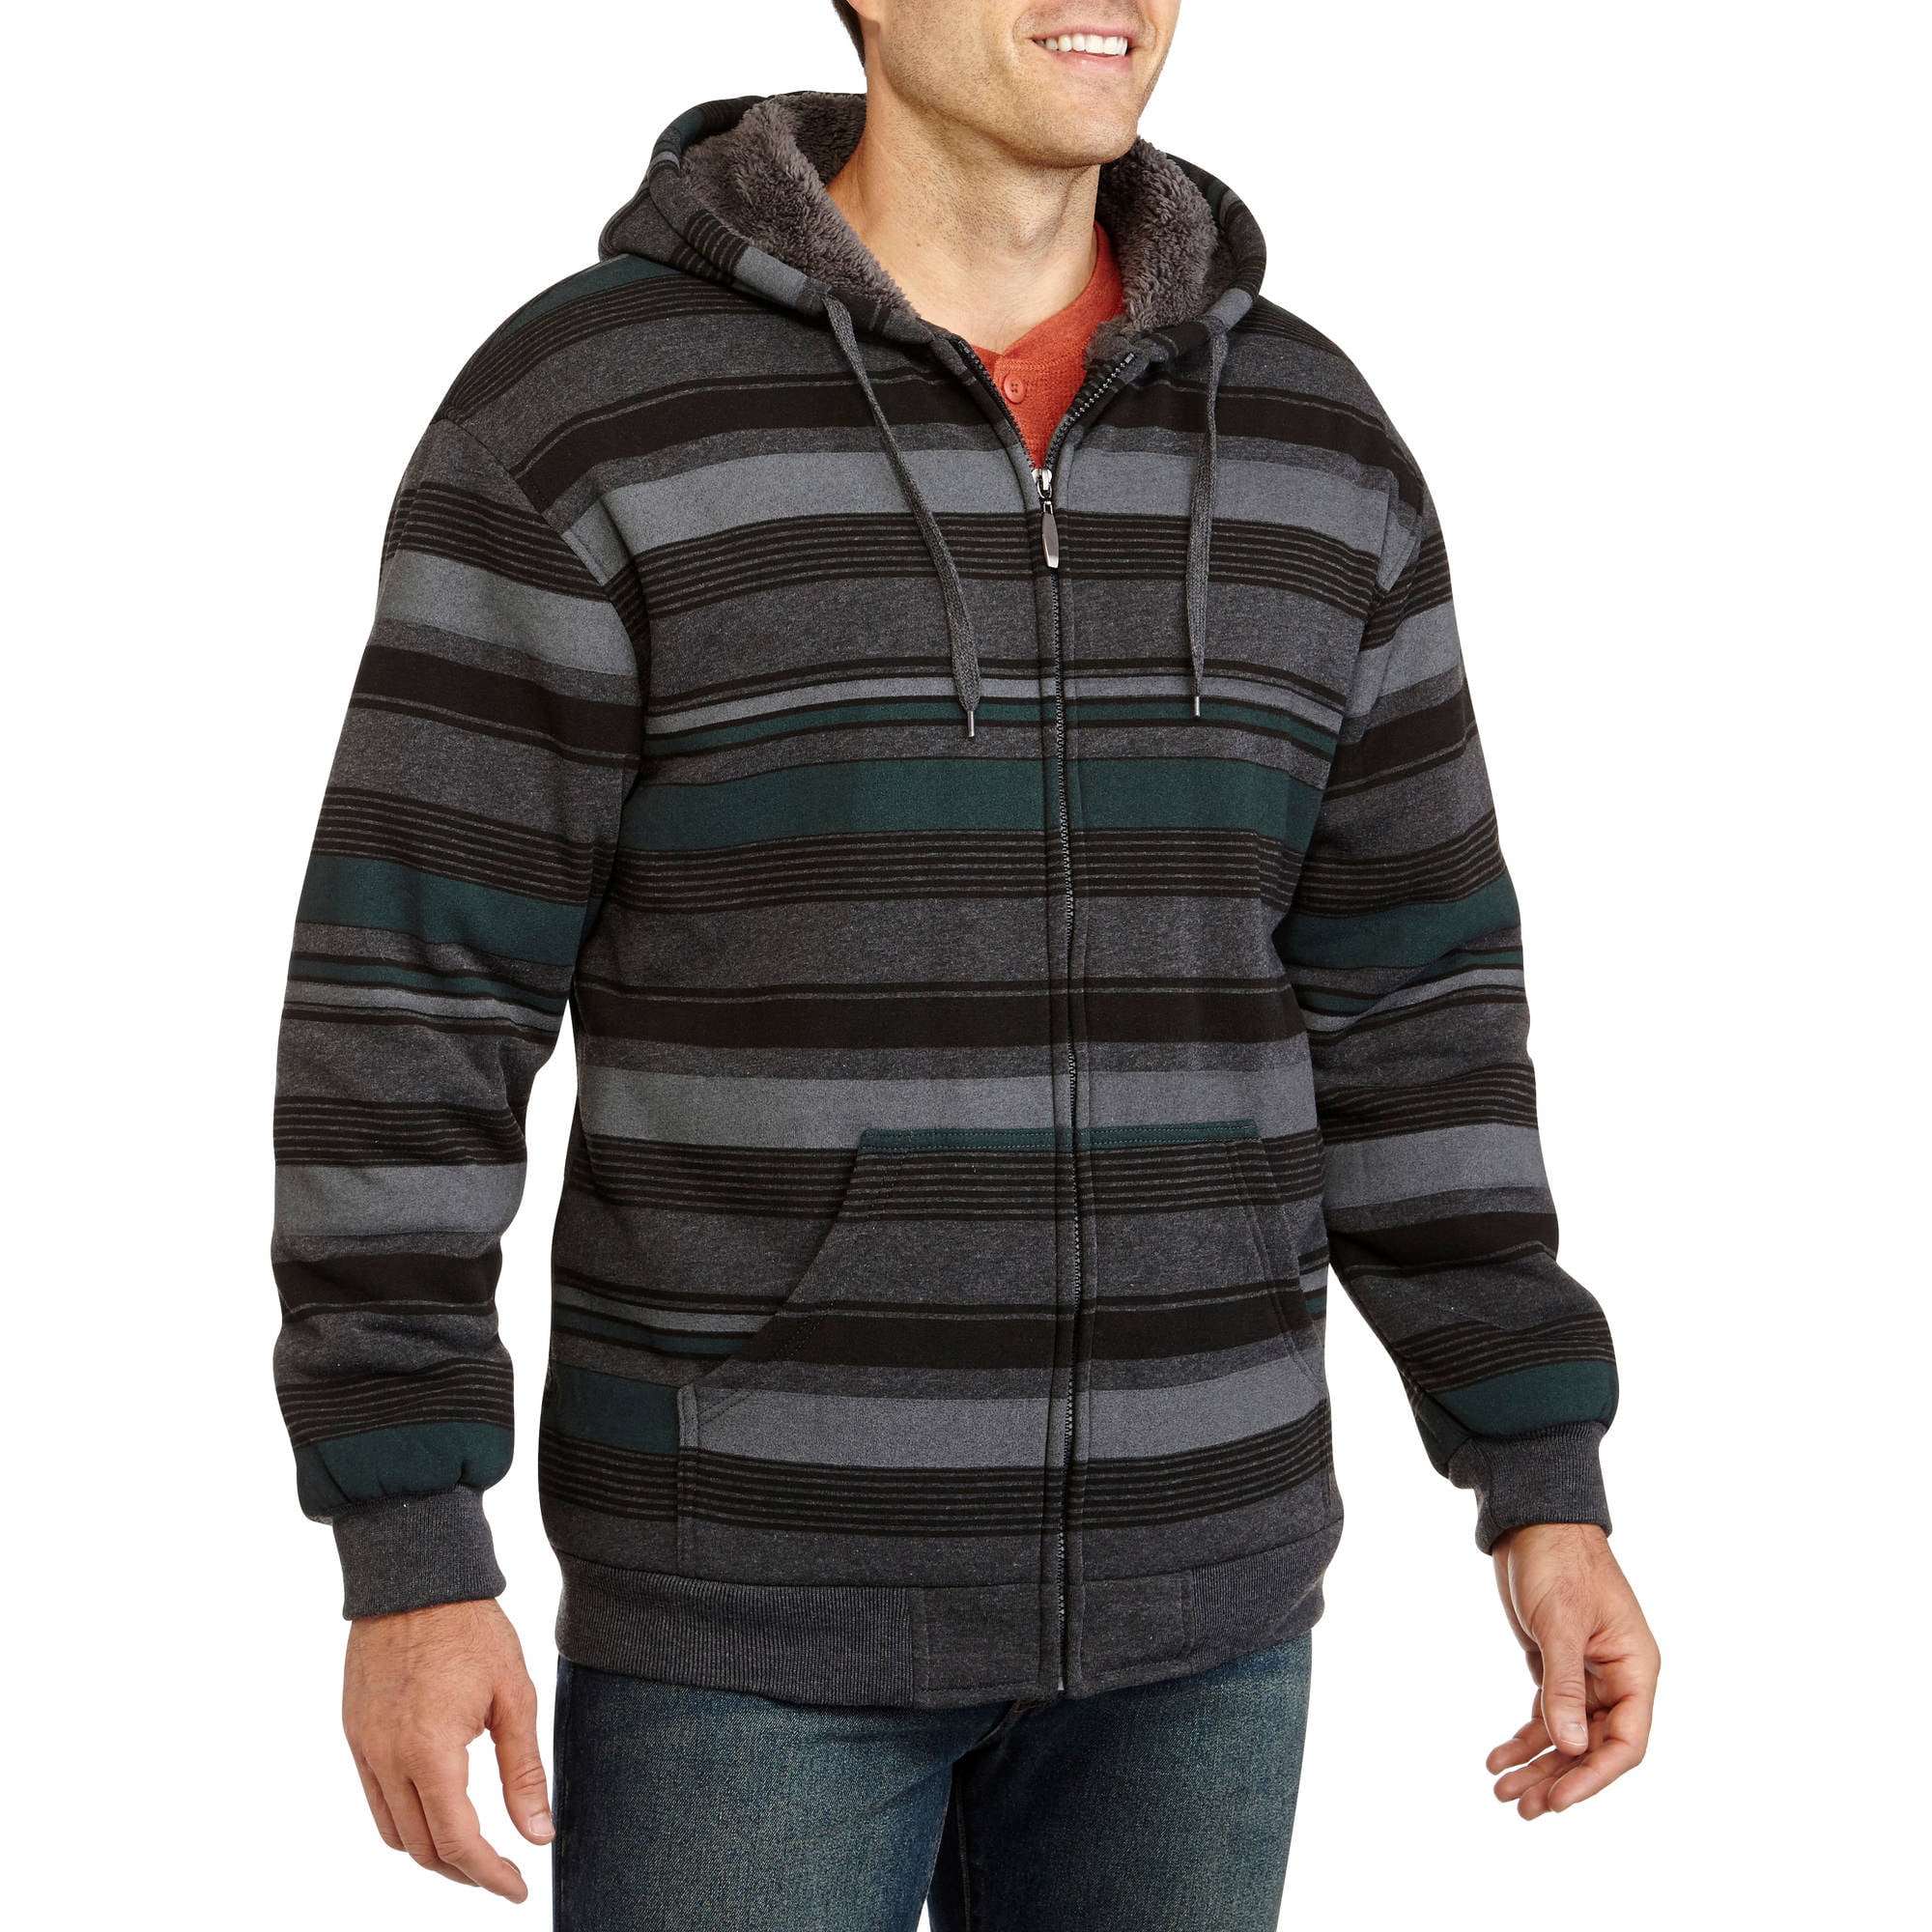 Big Men's Multi Stripe Fleece Jacket with Sherpa Lining - Walmart.com